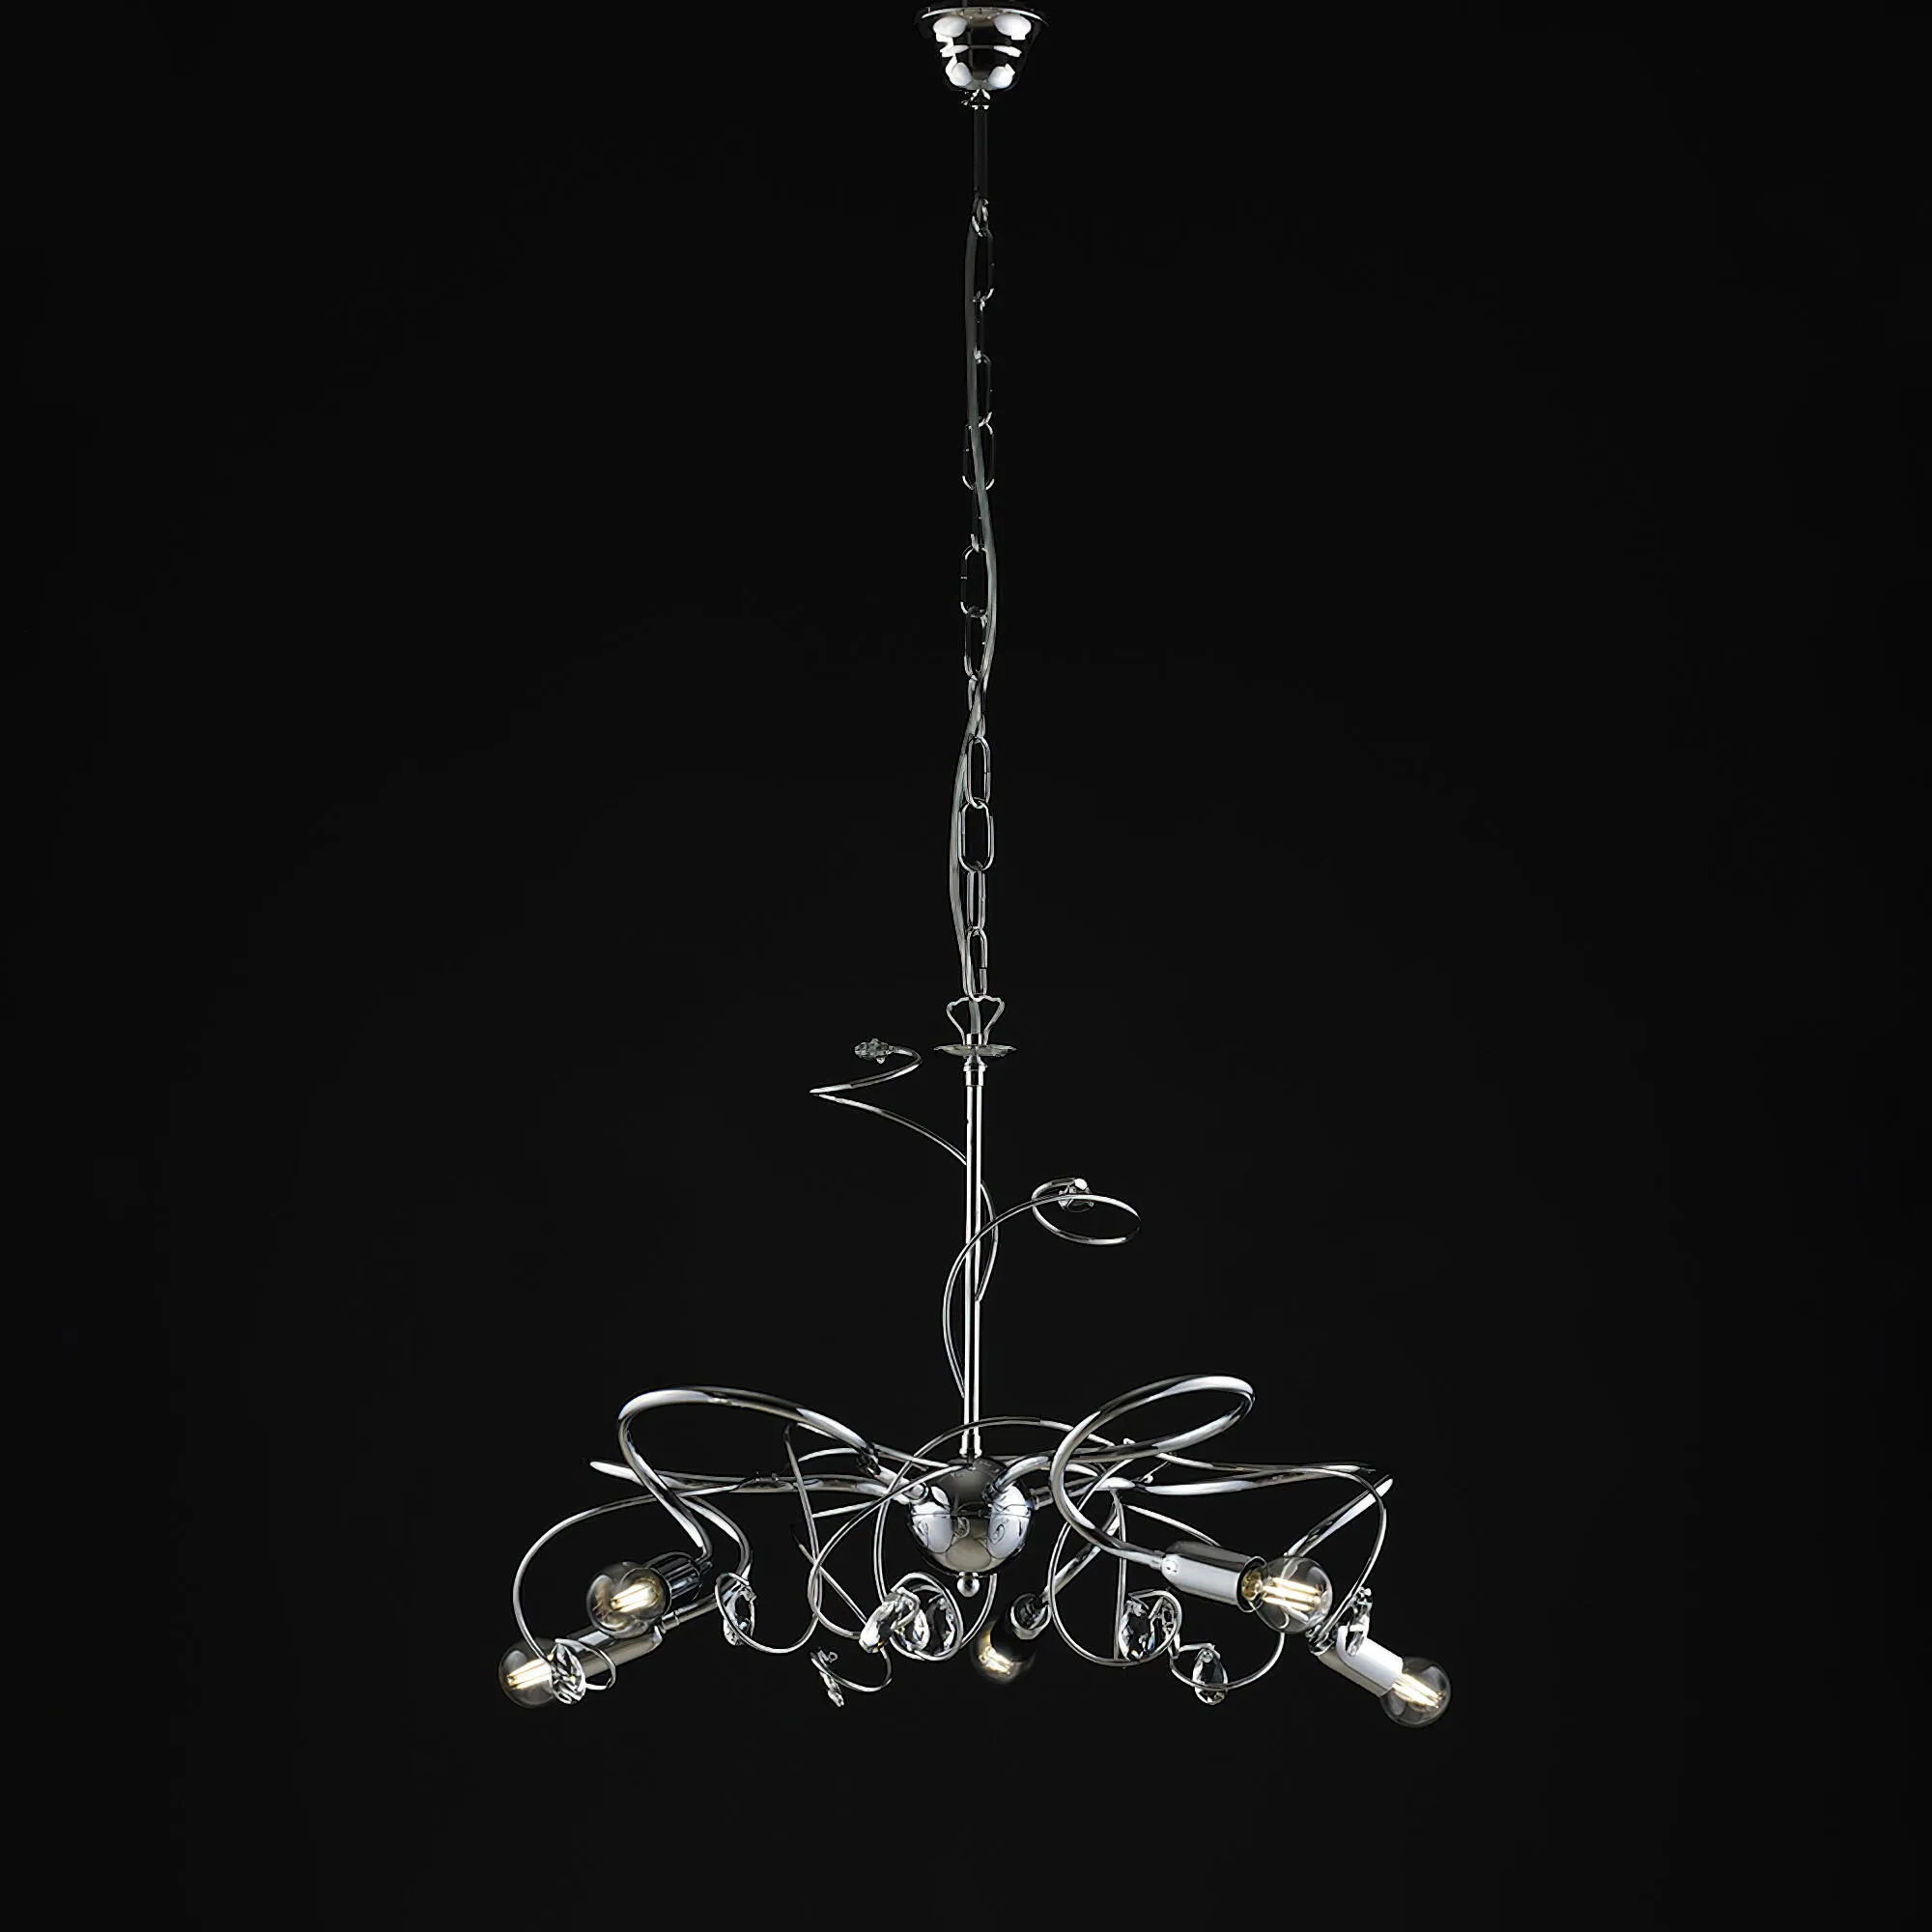 Lampadario Twister in ferro cromato lucido con strass in cristallo 5 luci, altezza 44 Cm, Cavo allungabile fino a 108 Cm, larghezza 54 Cm